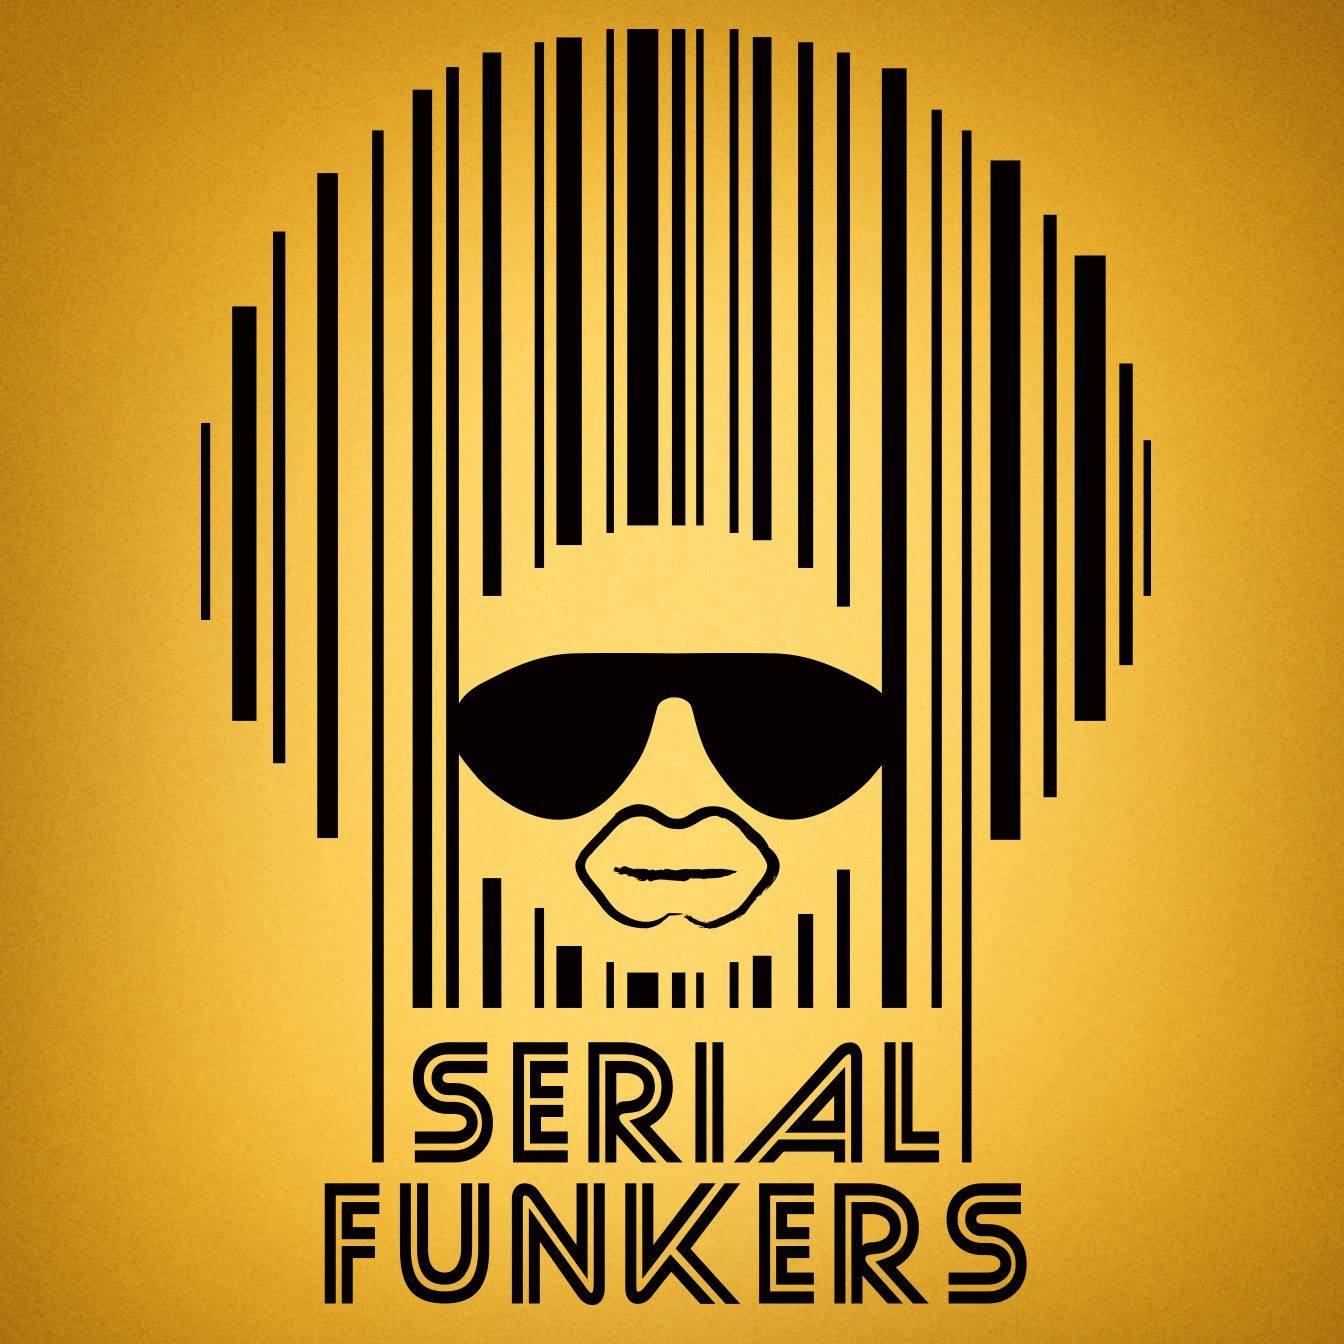 Serial Funkers